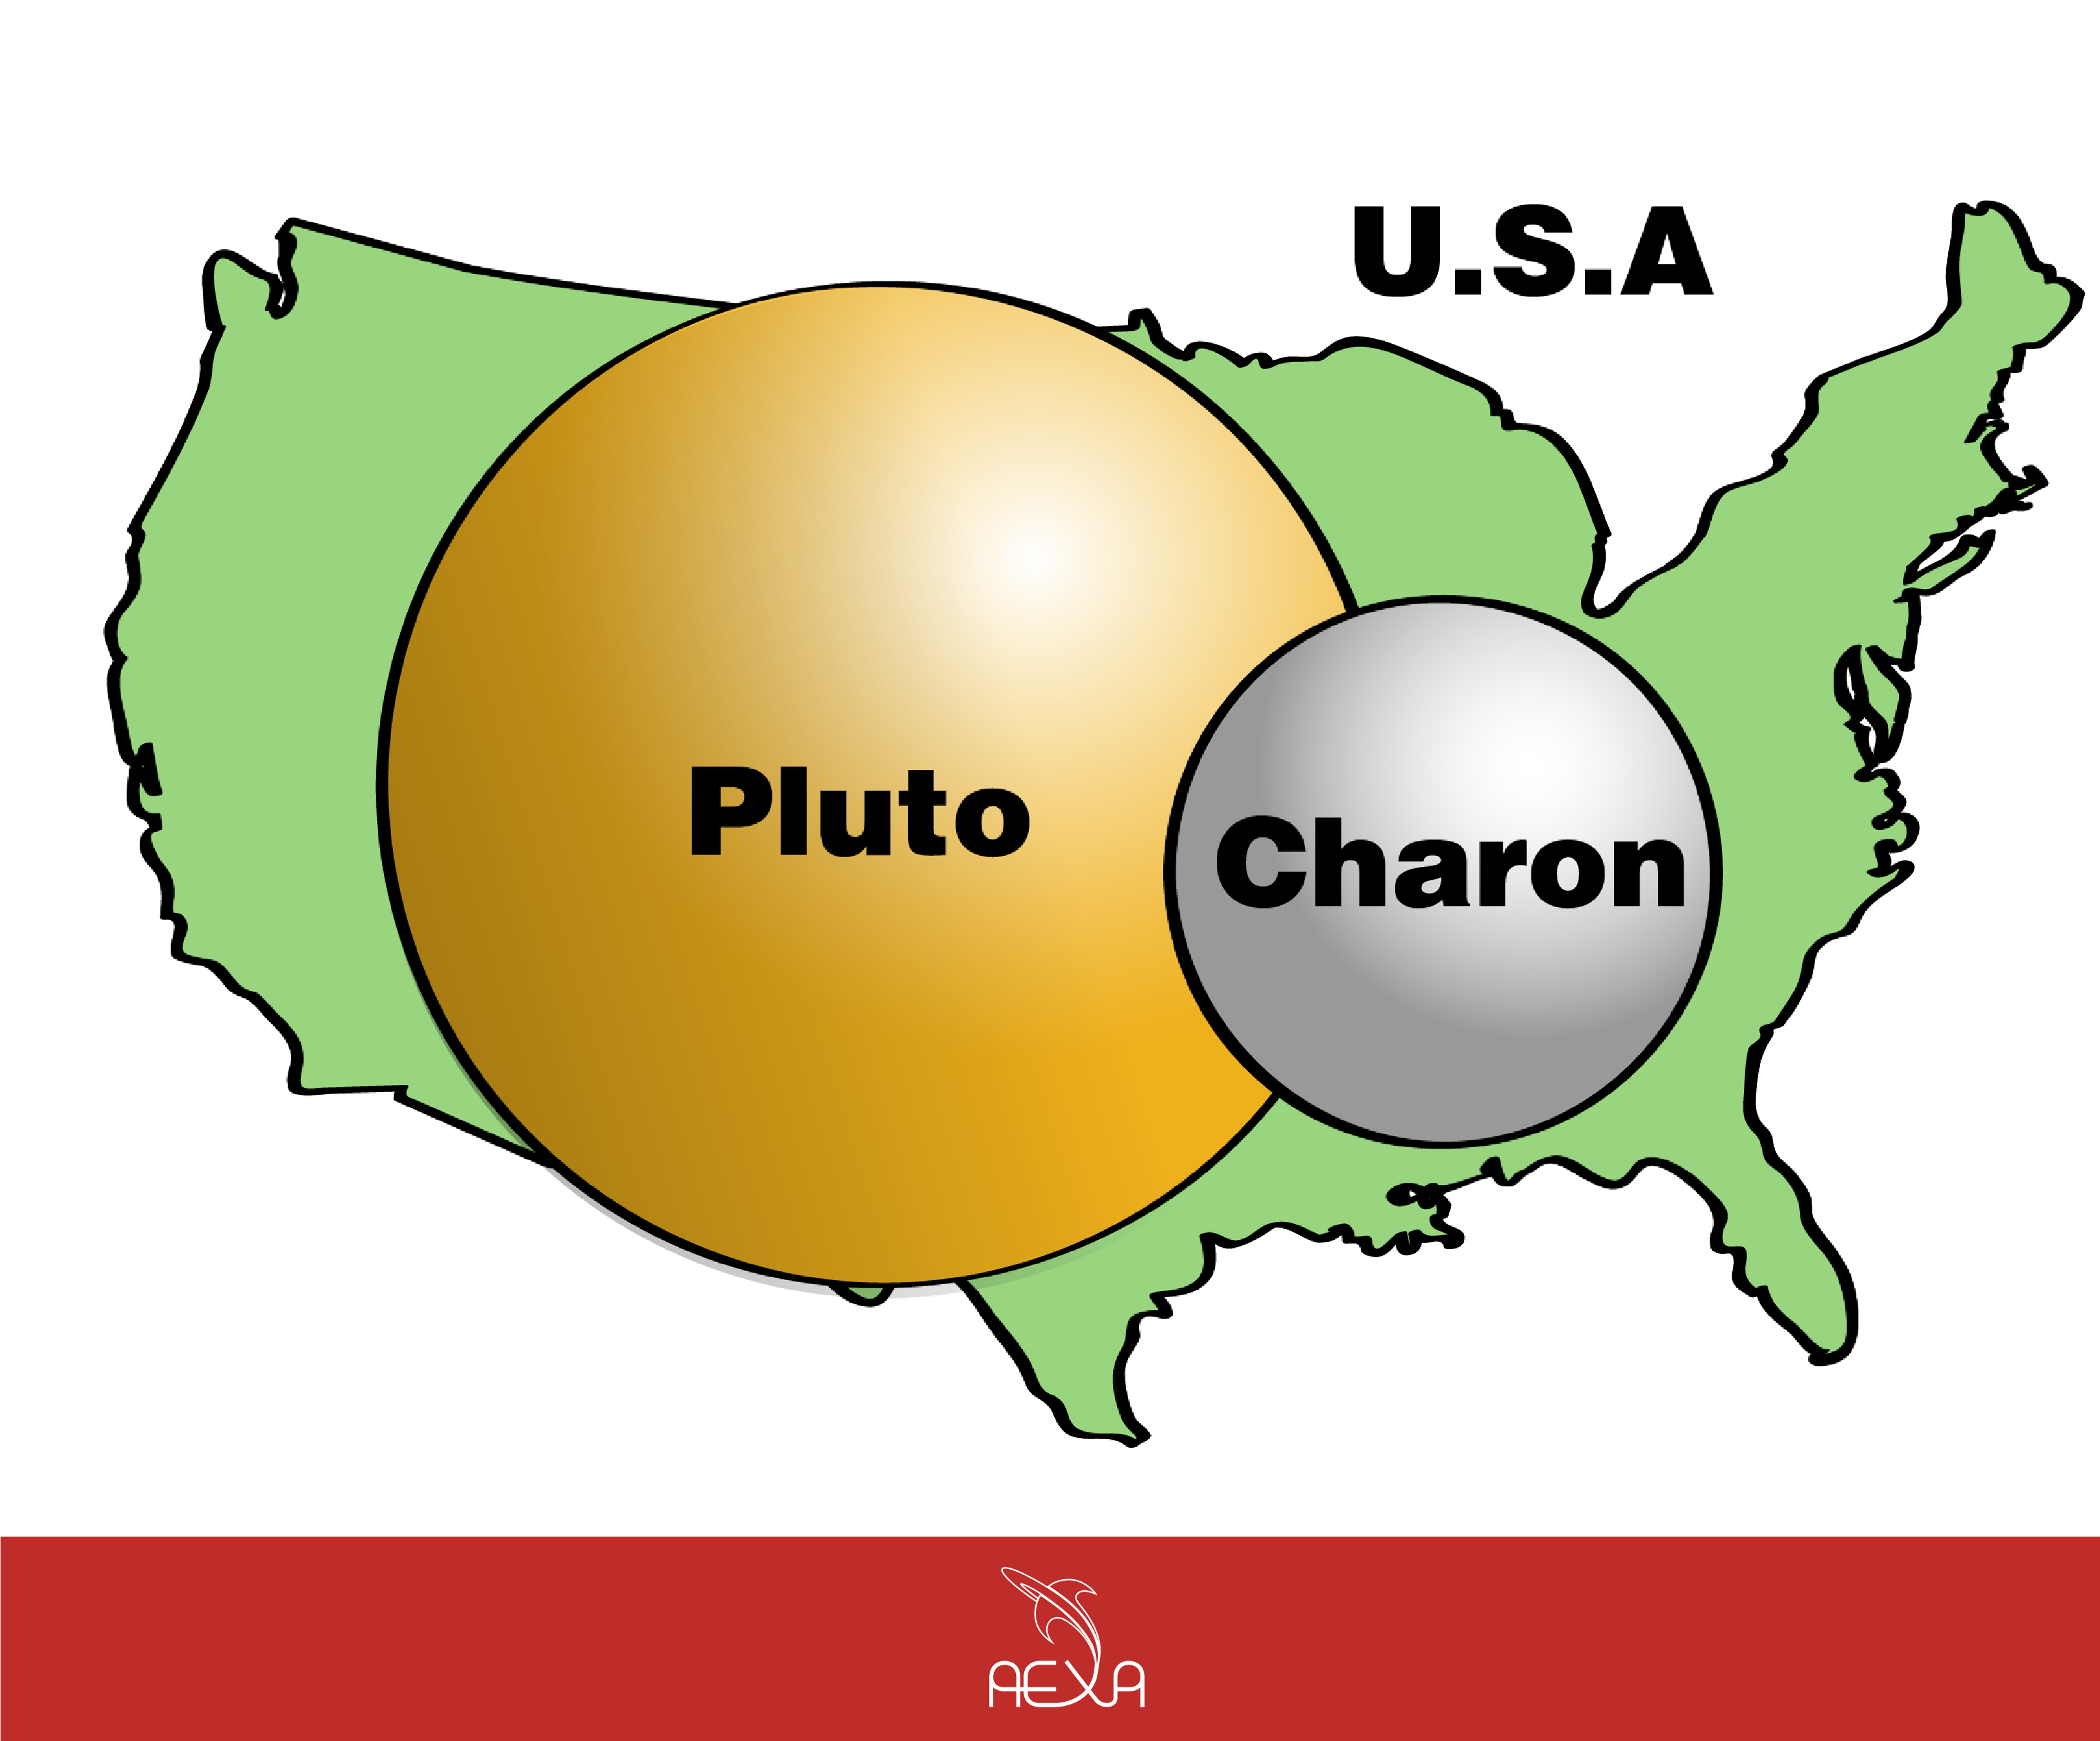 Cuál es la mejor descripción de Plutón?